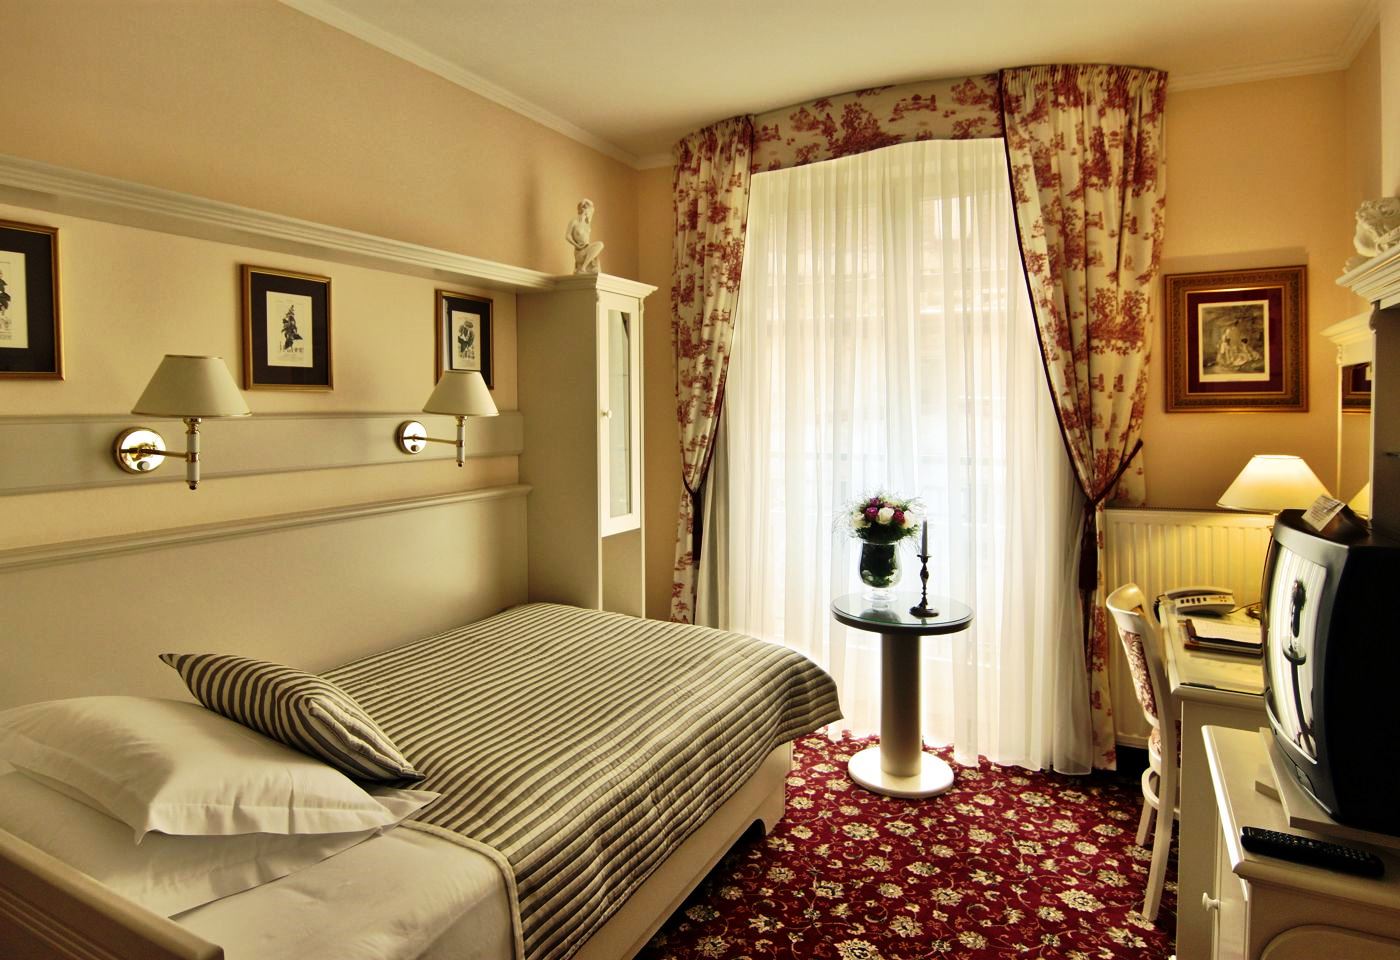 Lázeňský hotel Aura Palace – luxusní ubytování, jednolůžkový pokoj